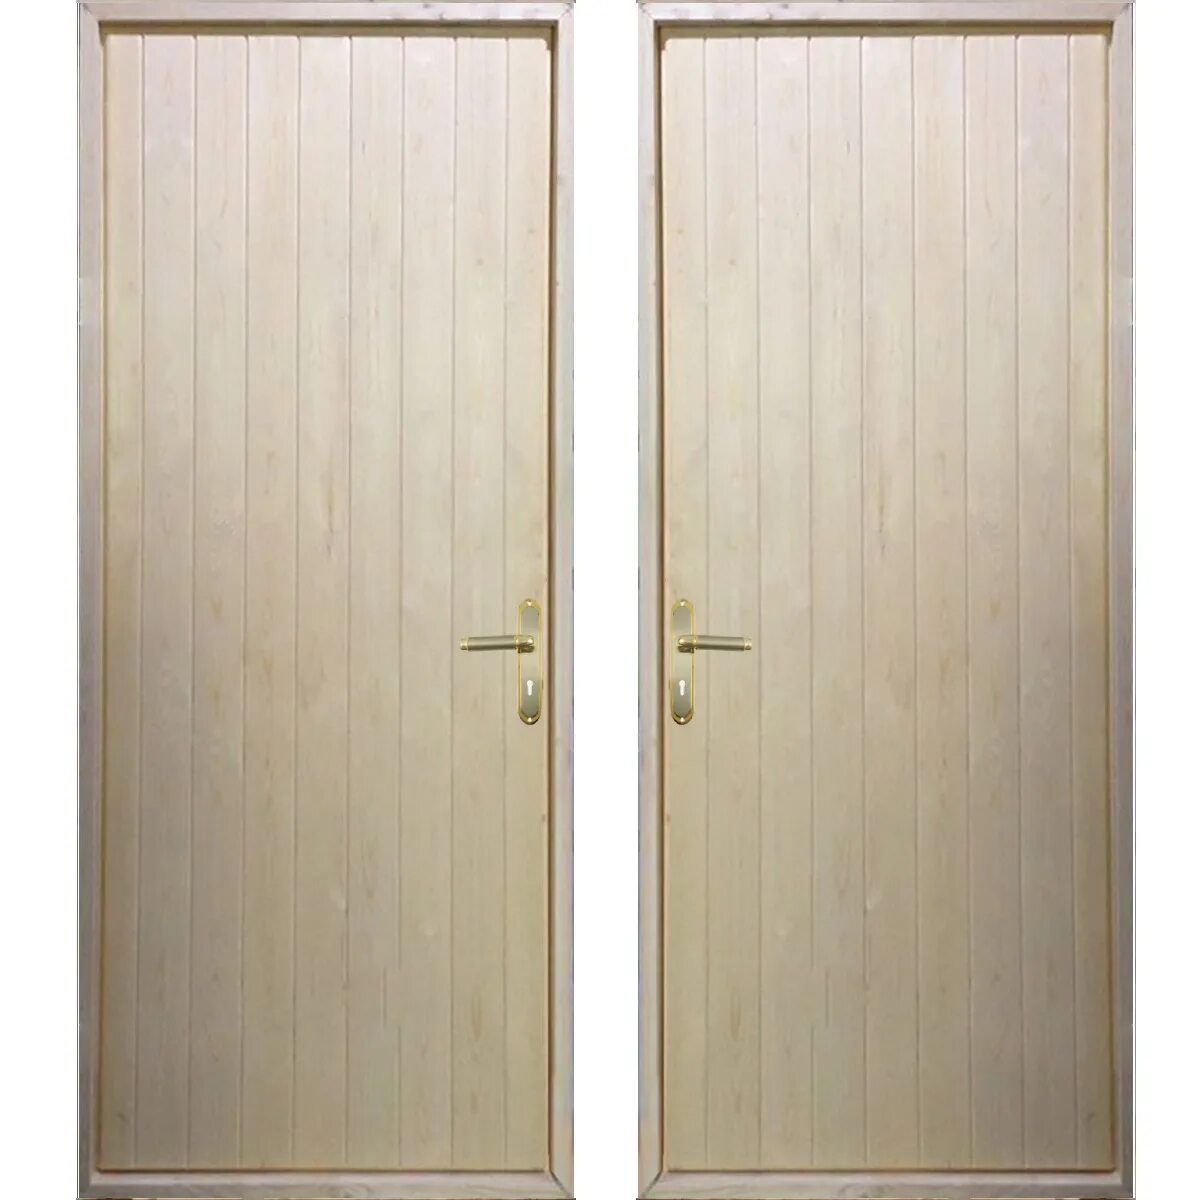 Панельная дверь. Щитовая дверь. Дверь щитовая деревянная. Щитовая входная дверь. Двери щитовые деревянные.